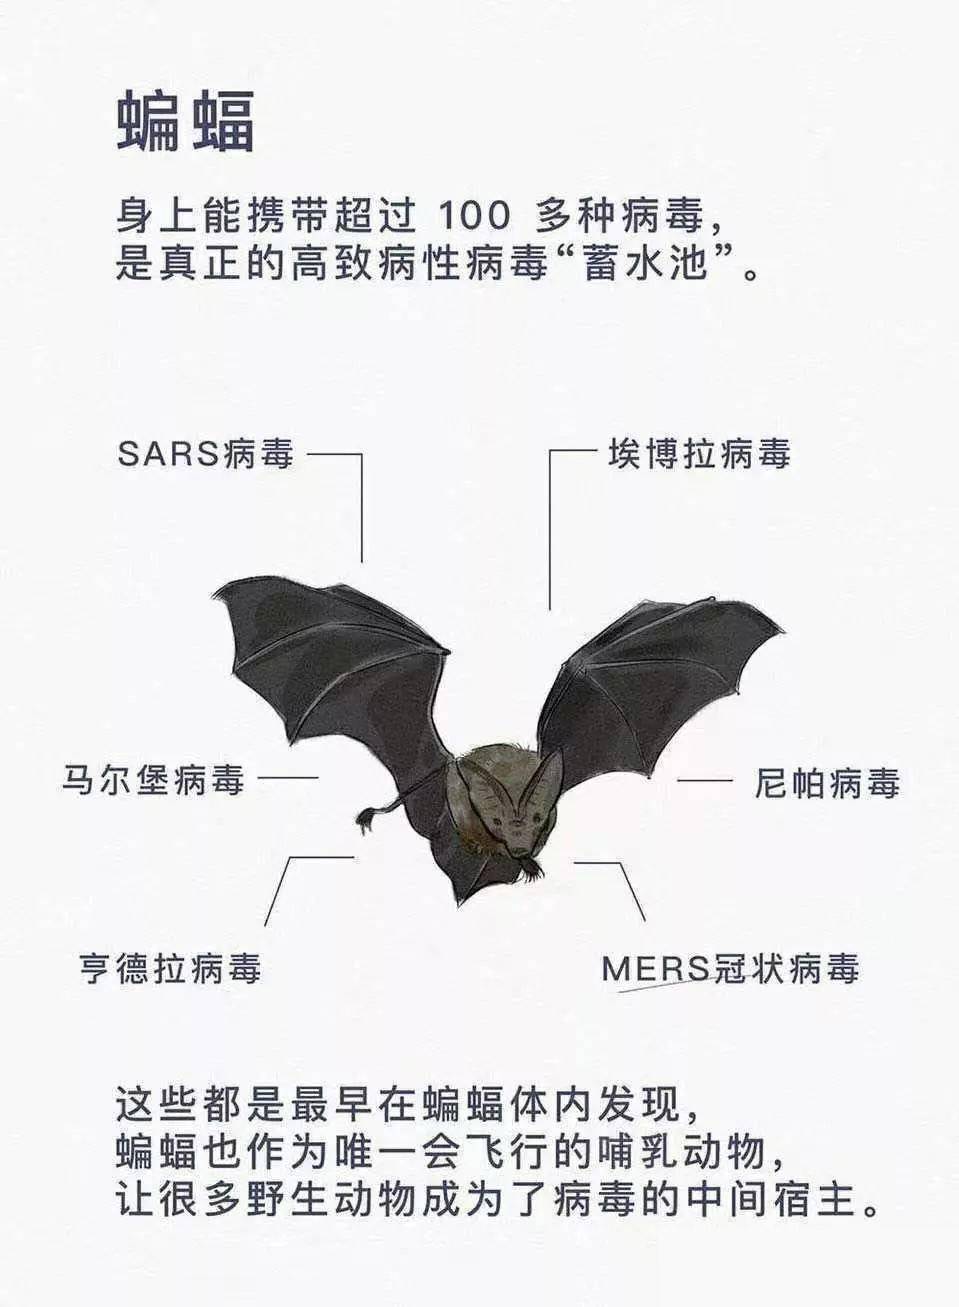 太反常了！四川德阳出现大量蝙蝠，黑压压一片，是灾难前兆吗？